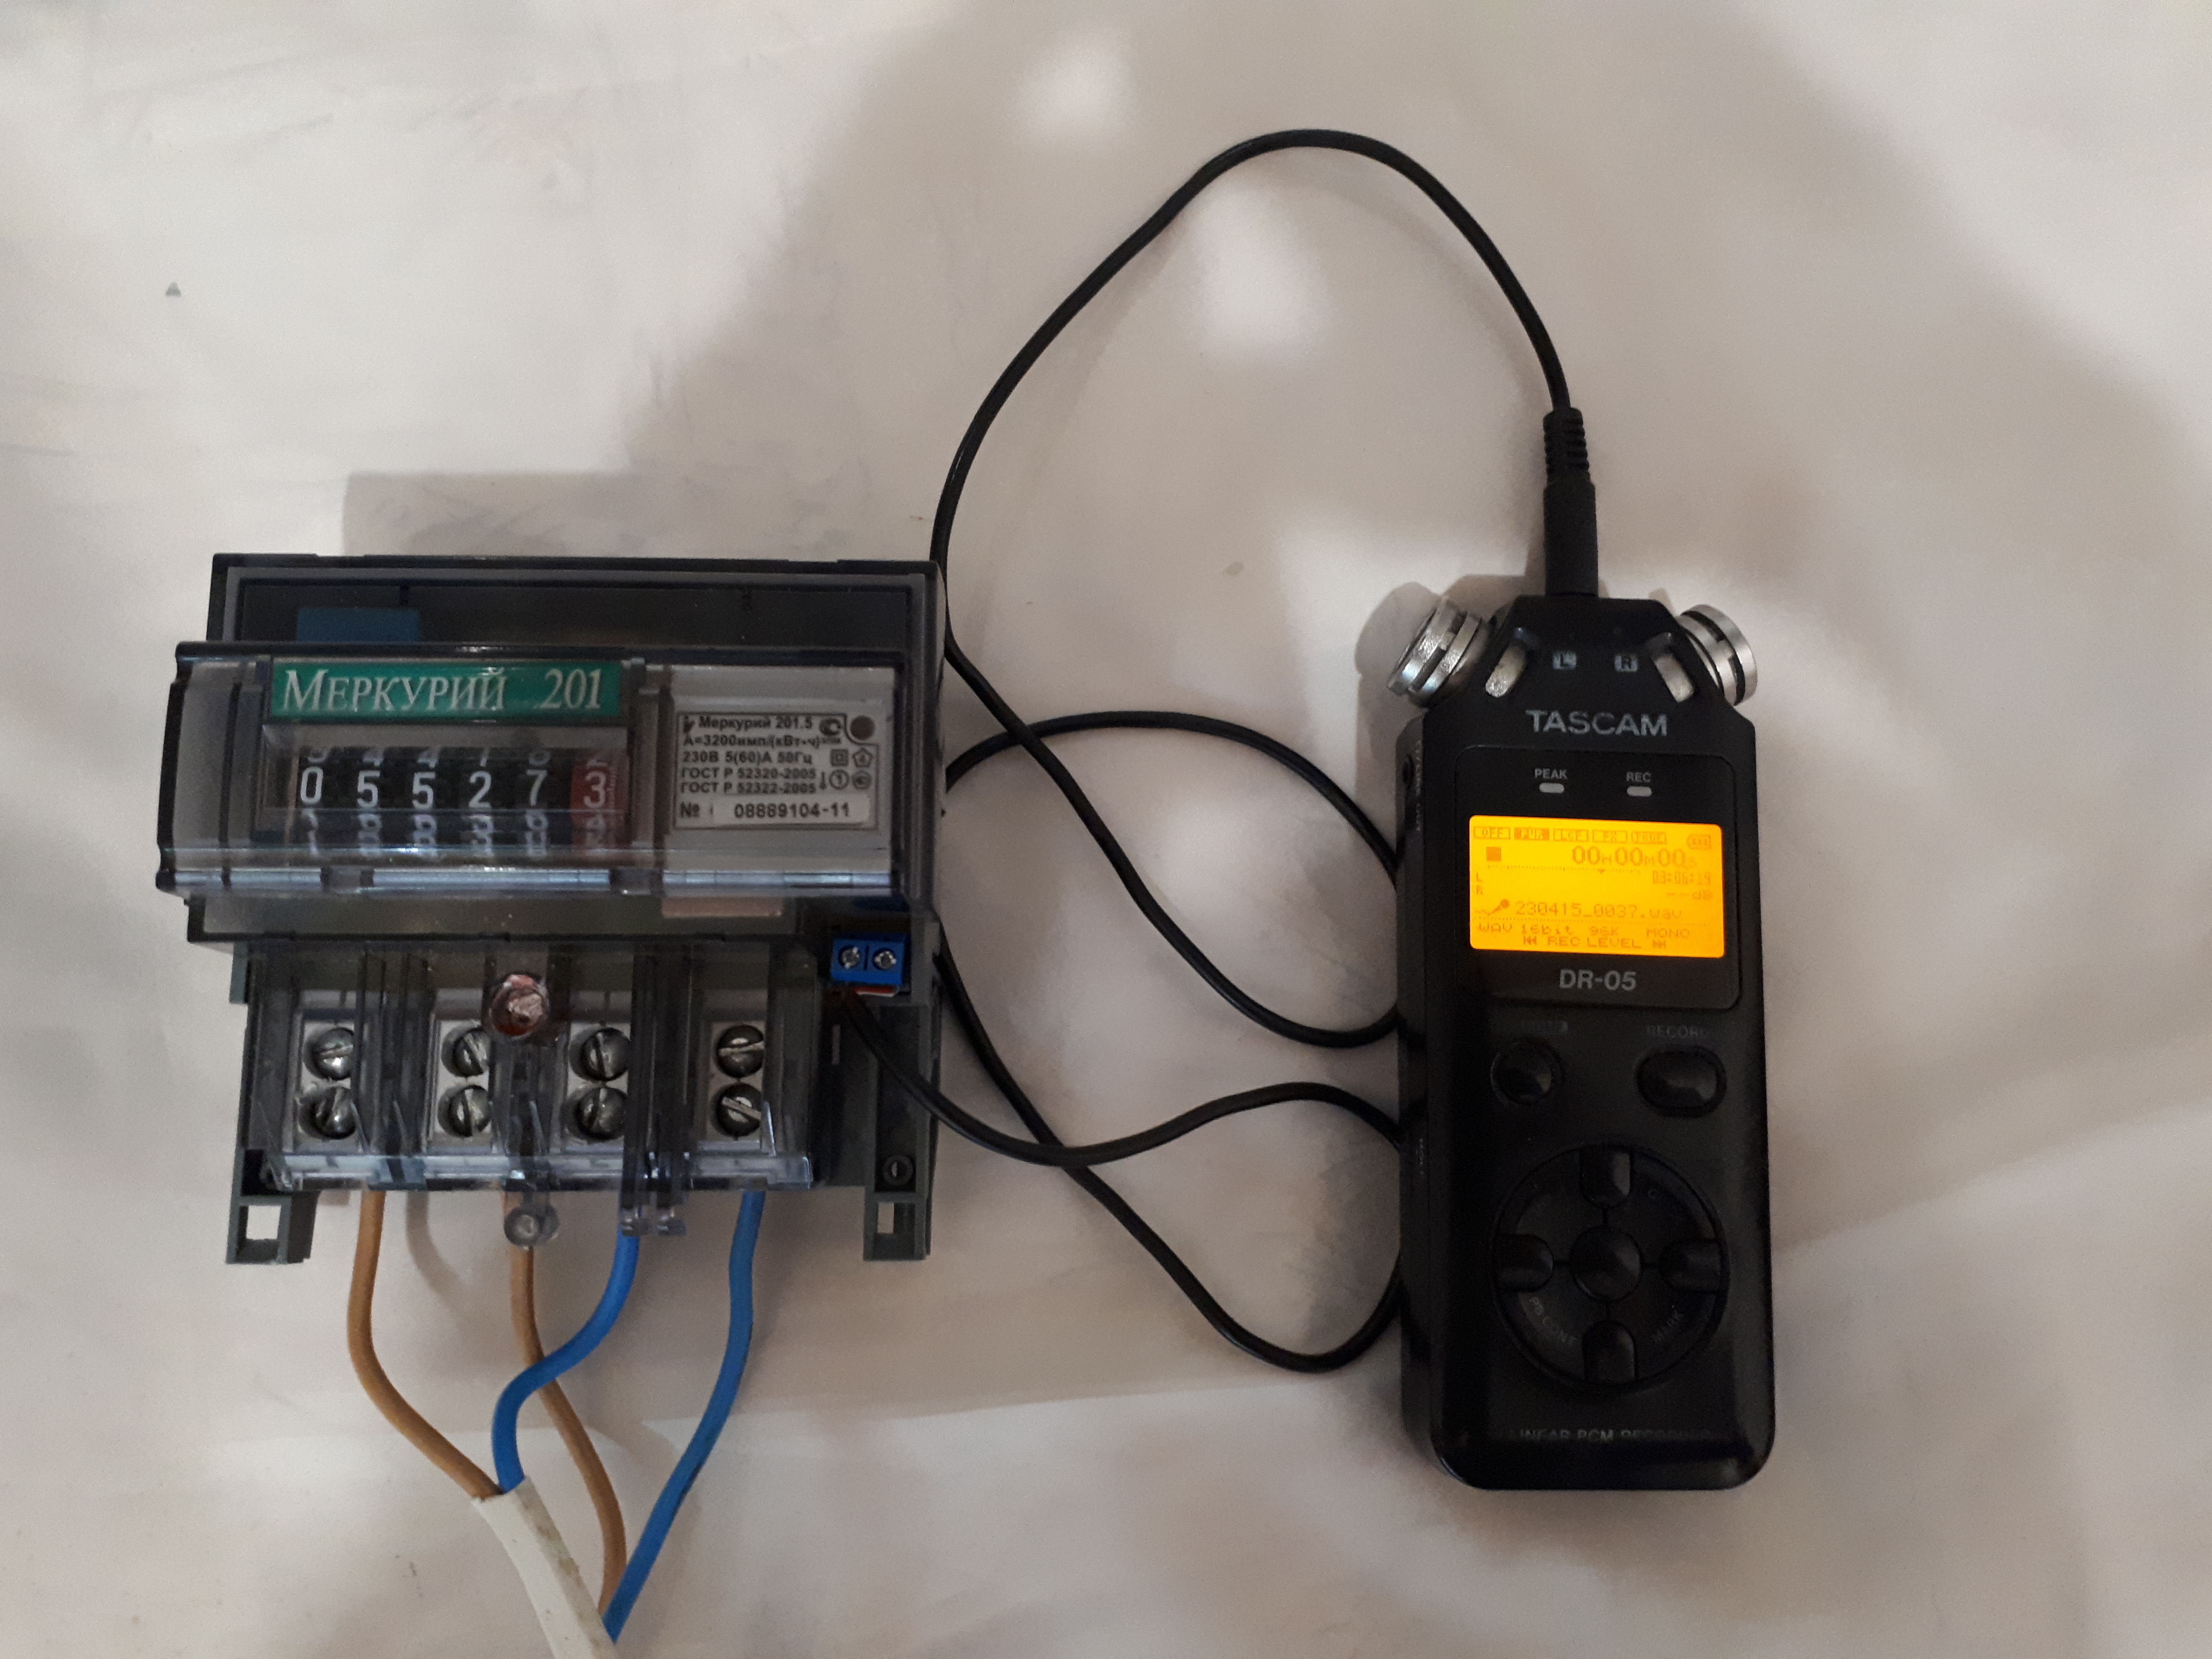 Аудиорекордер, подключенный к импульсному выходу электросчётчика